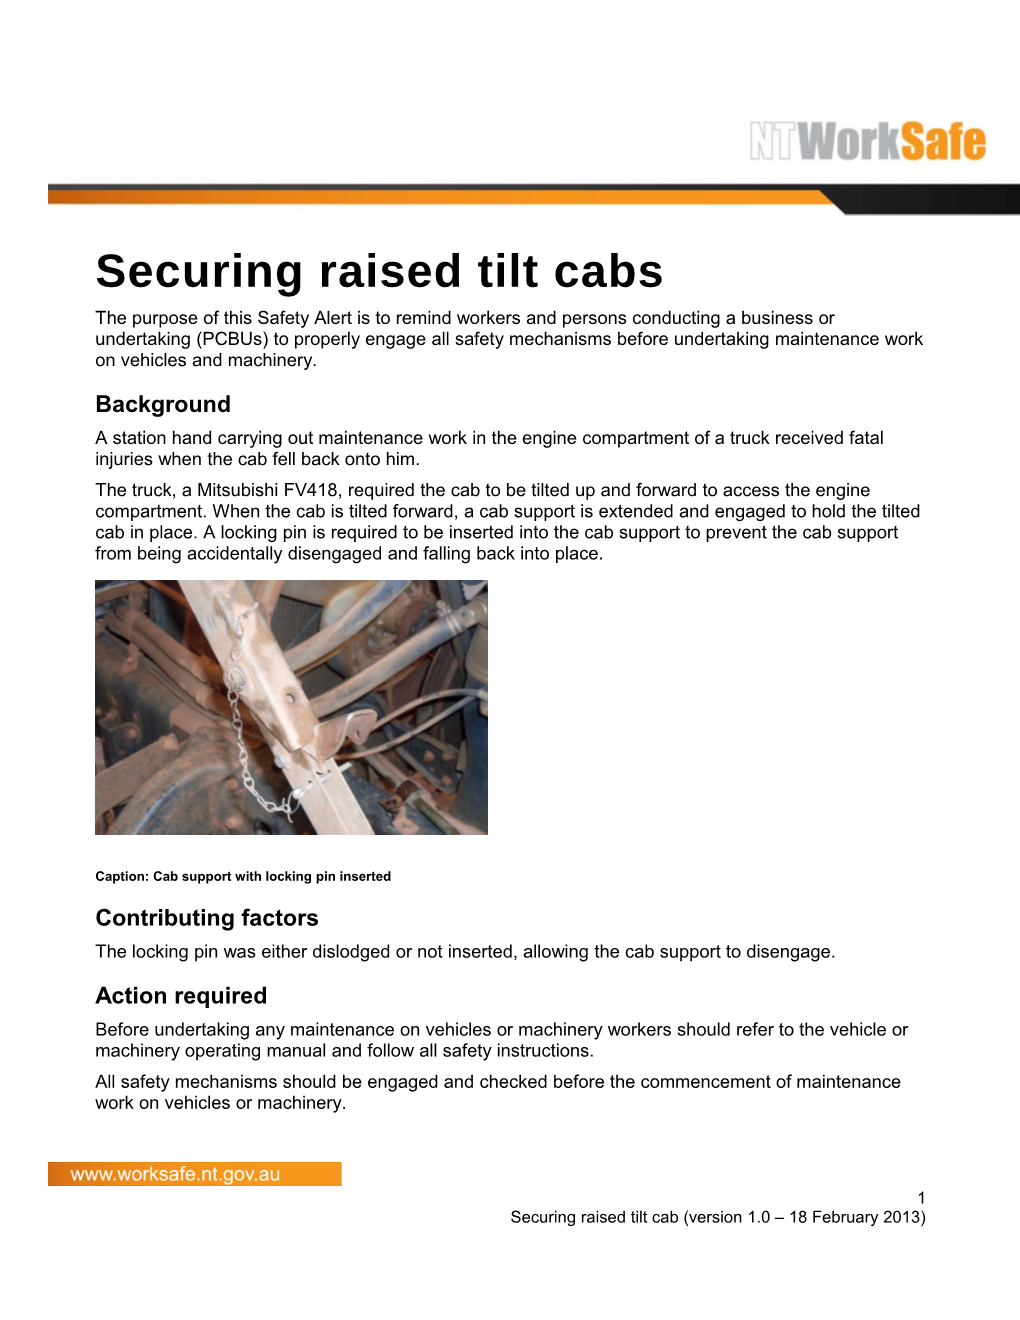 Safety Alert - Securing Raised Tilt Cabs